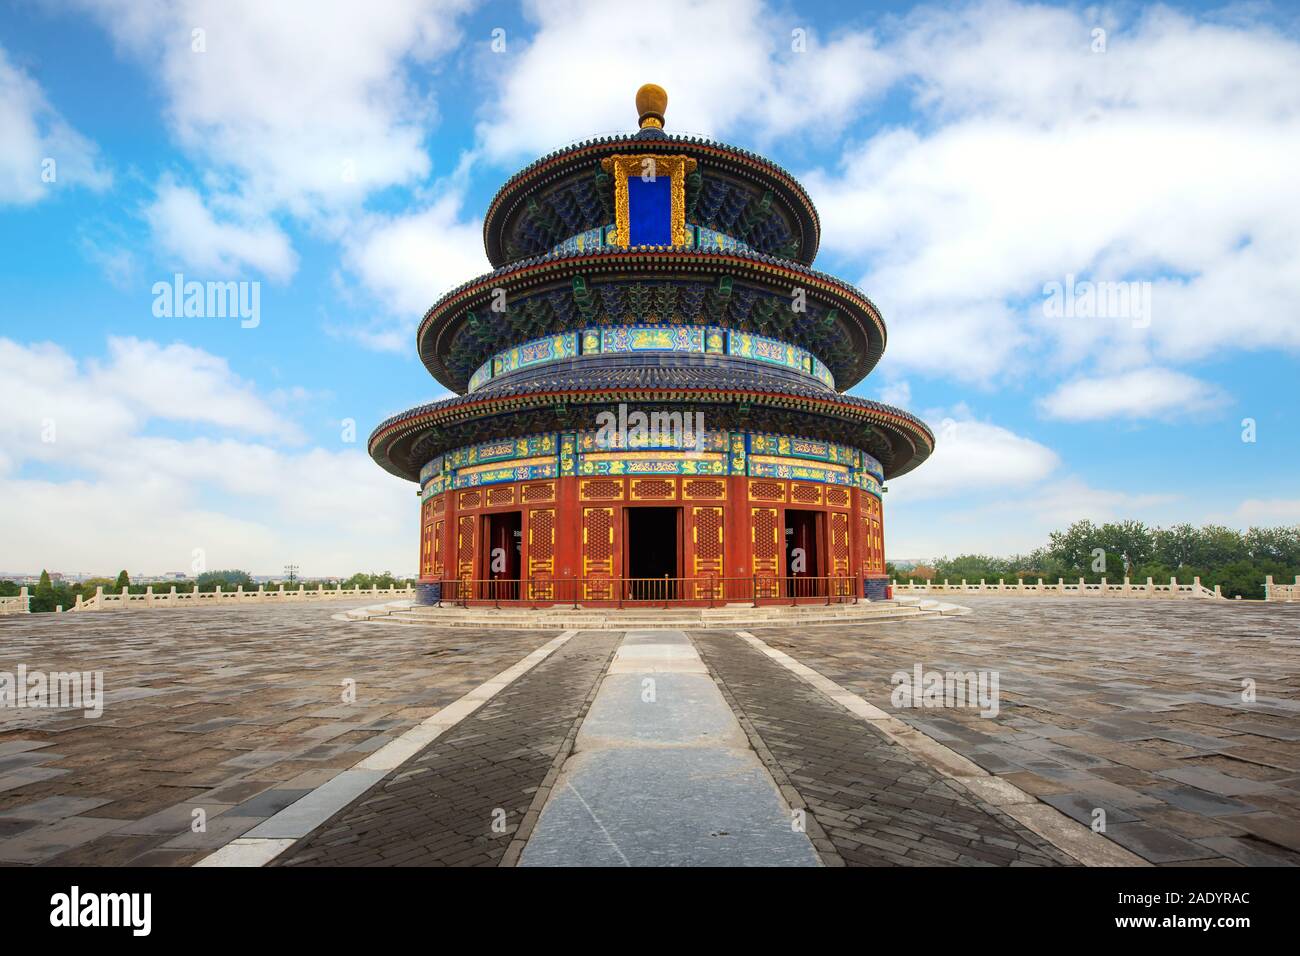 Meraviglioso e fantastico tempio di Pechino - Il Tempio del Cielo a Pechino in Cina. Sala della Preghiera del Buon Raccolto. Asian Tourism, storia edificio, o tradit Foto Stock